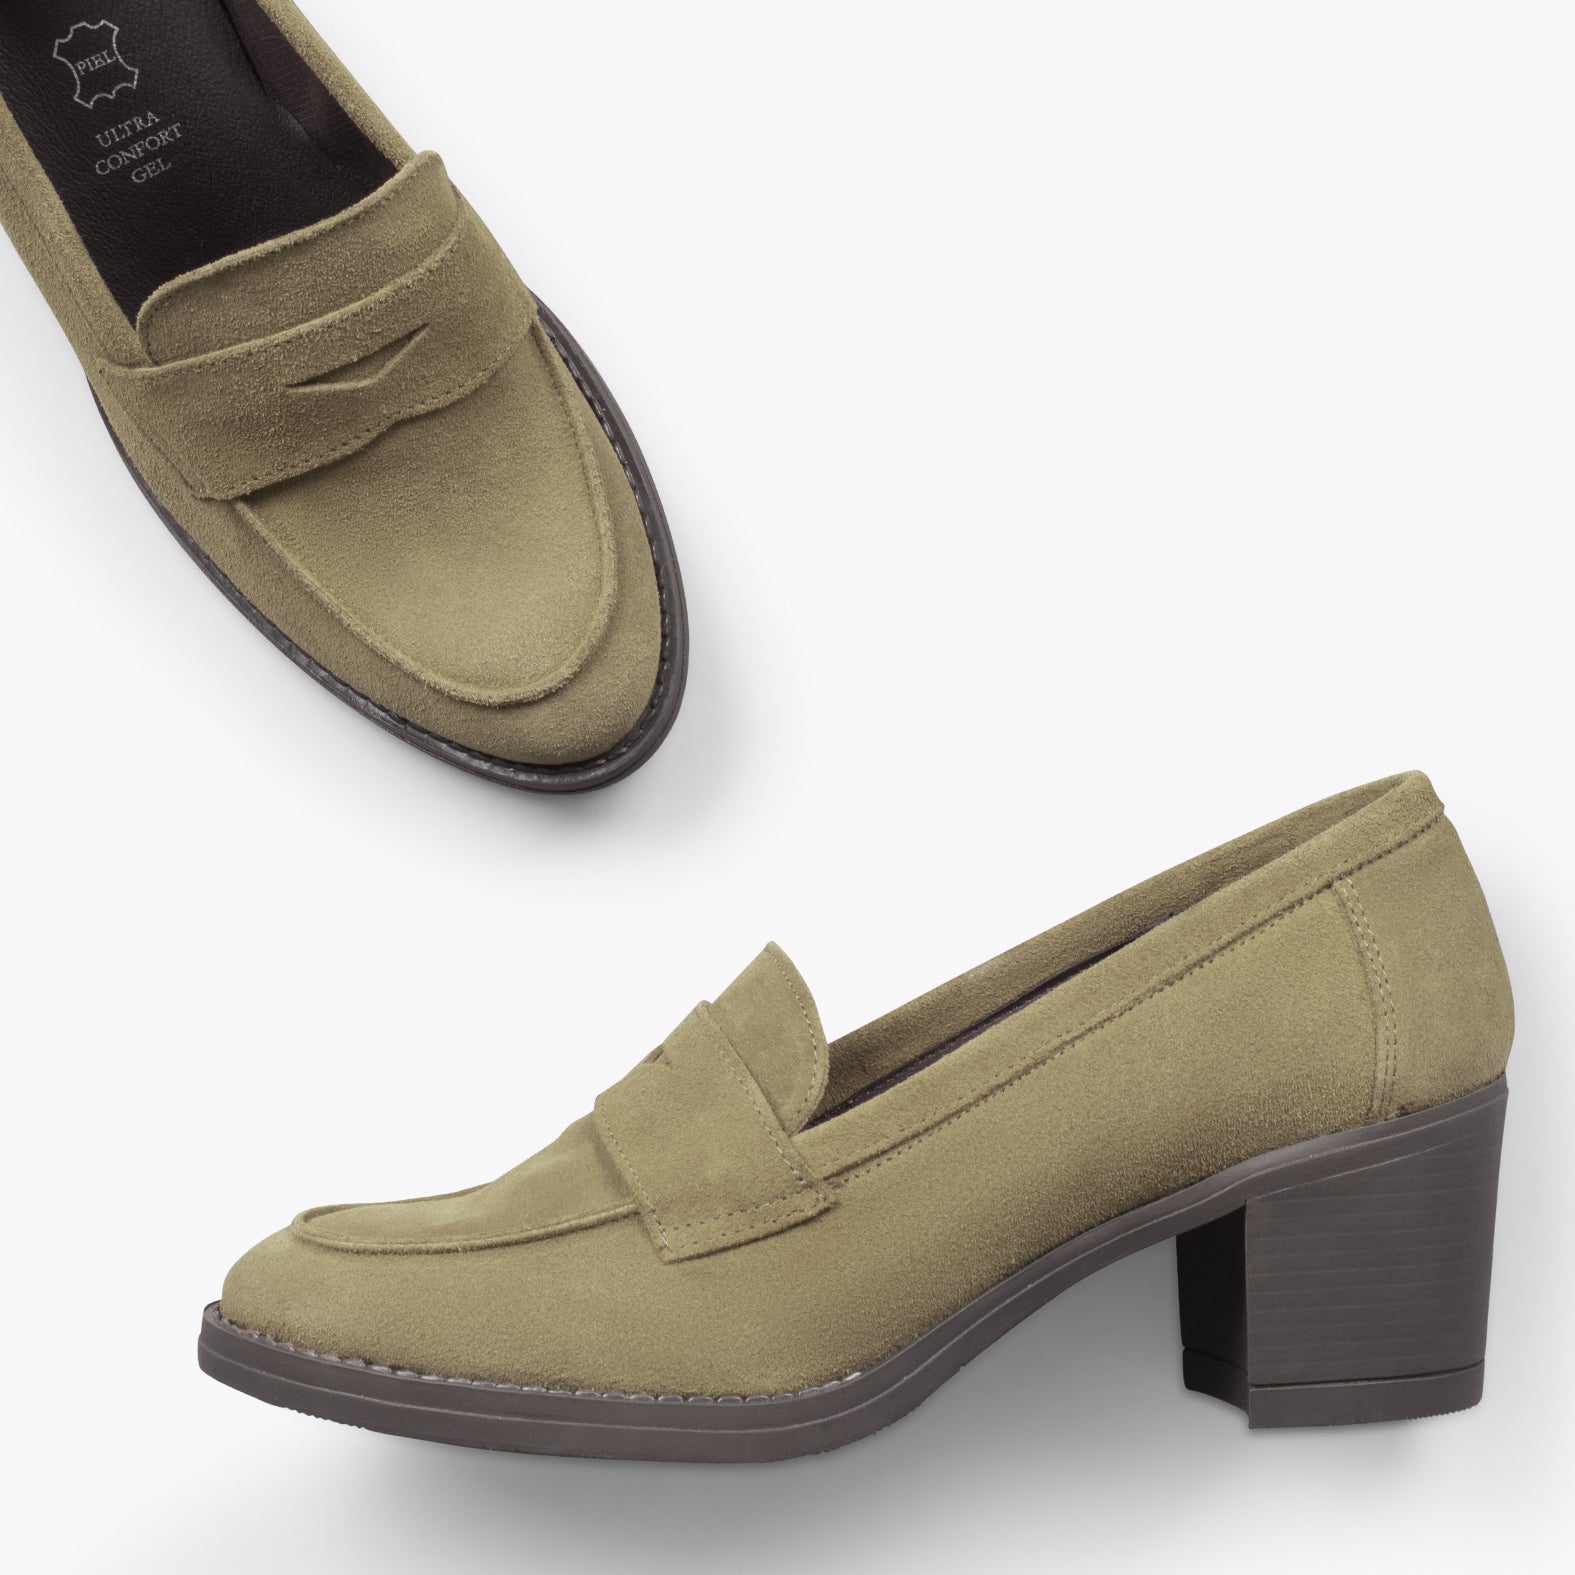 MOKKA – KHAKI suede leather mid heel moccasin